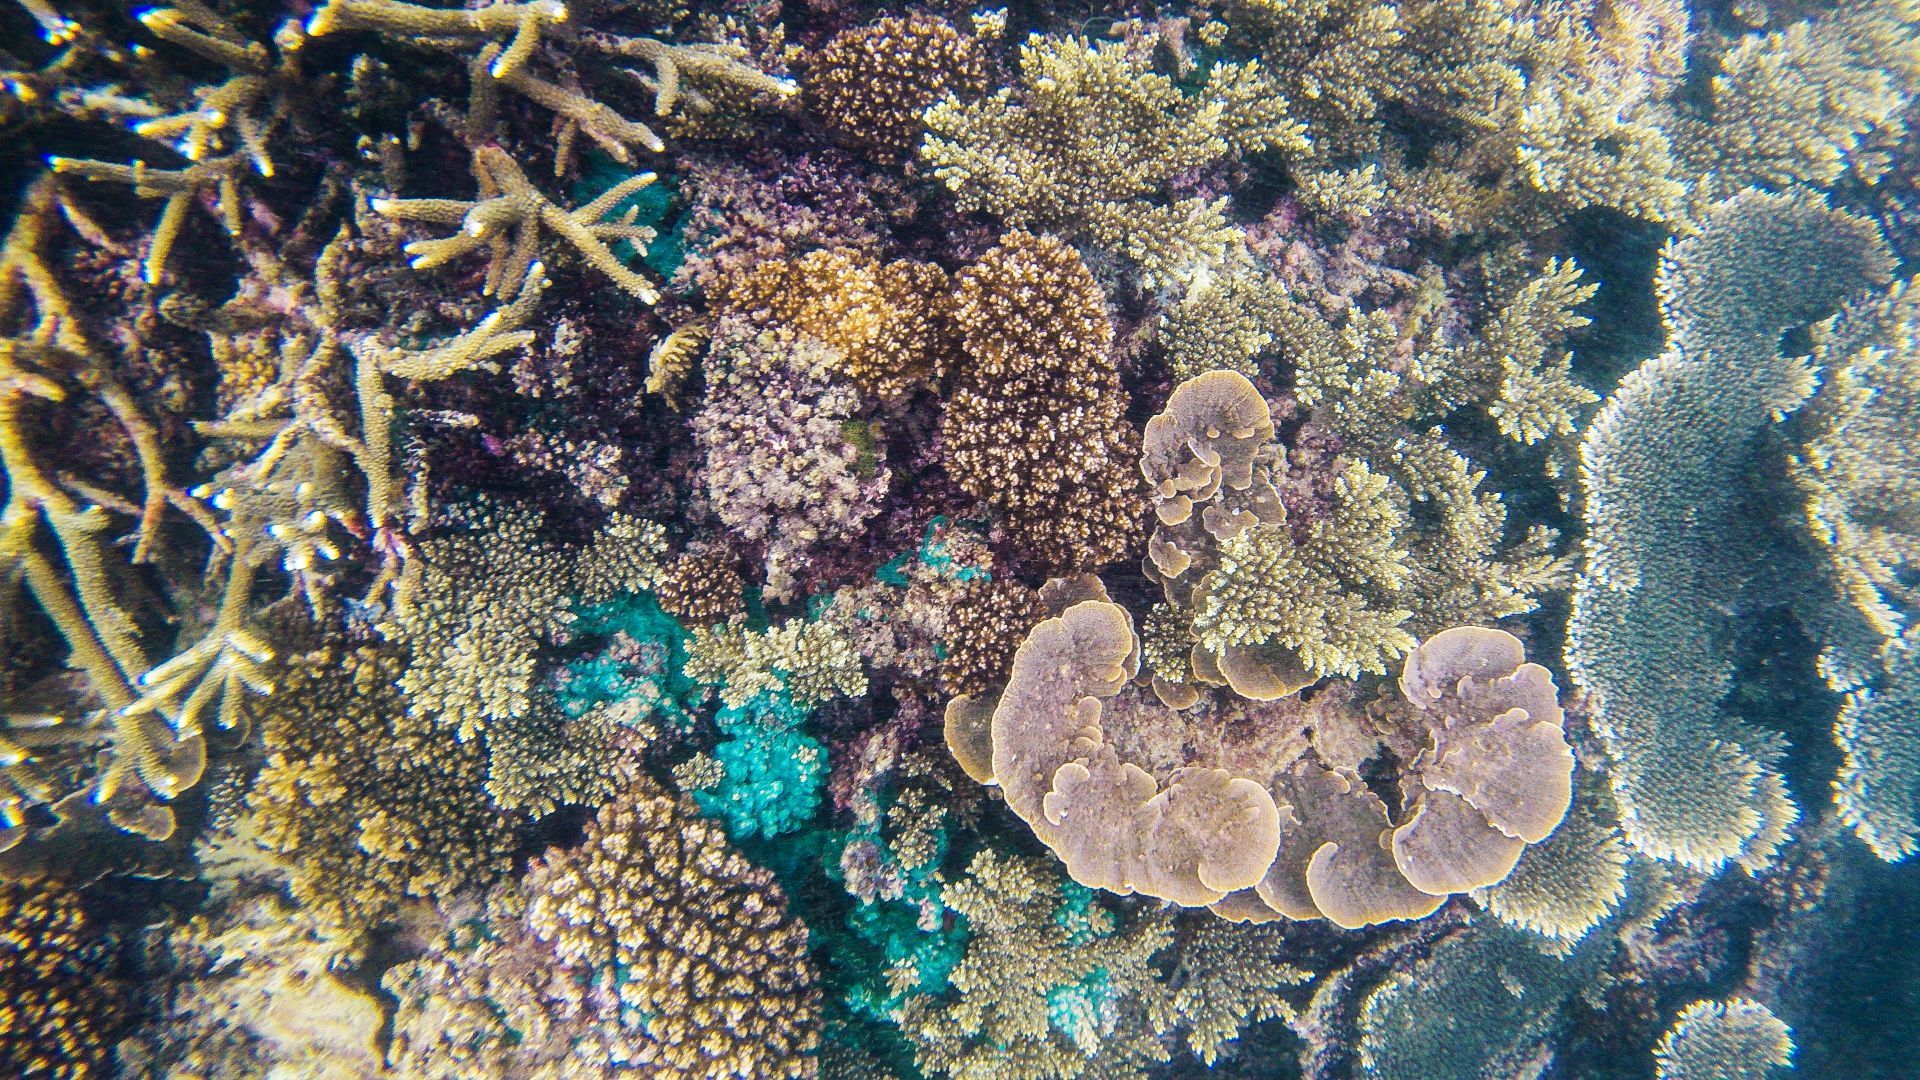 马来西亚纳闽。从大苏鲁干岛出发，到小苏鲁干岛附近海上下海浮潜。那边珊瑚很多，还非常浅，个别地方只有几